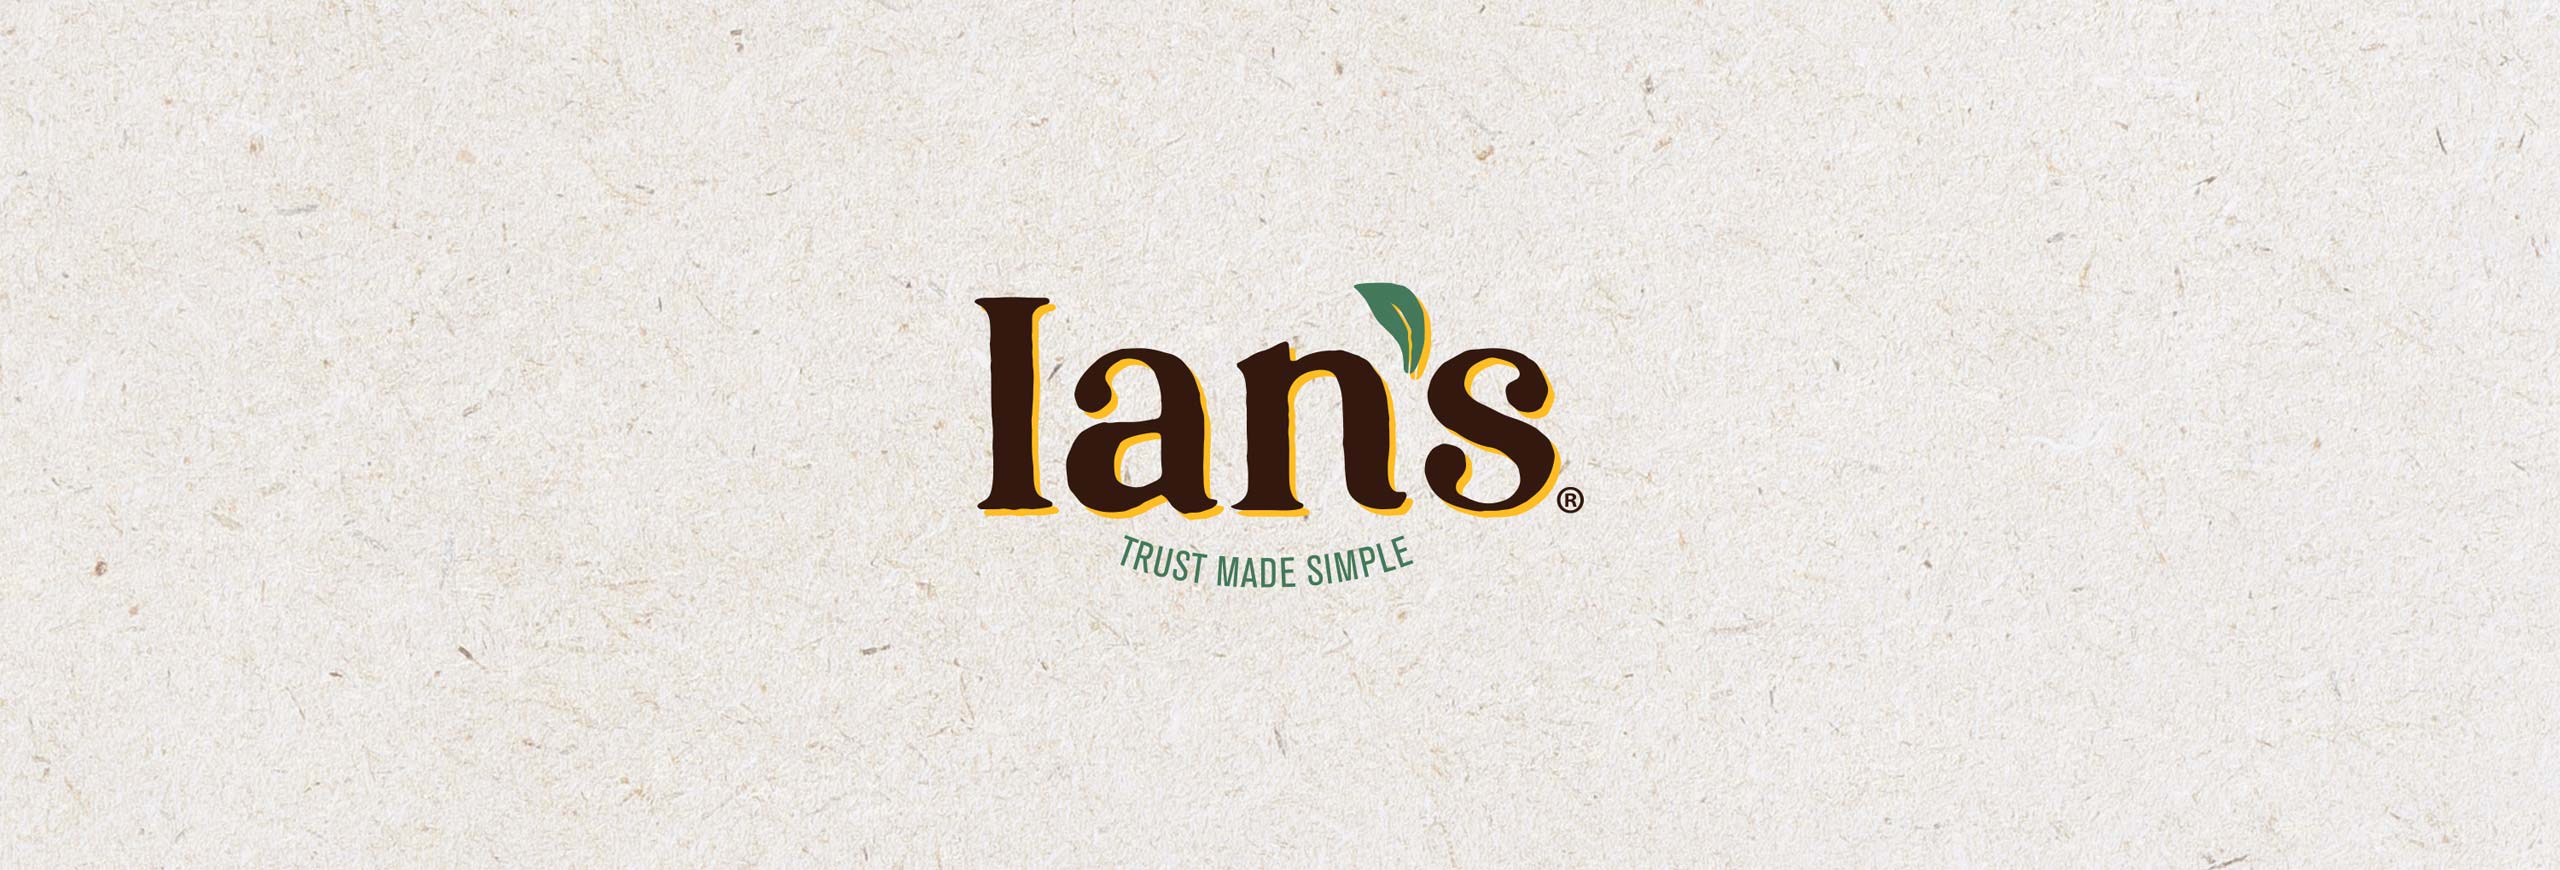 Ian’s Foods